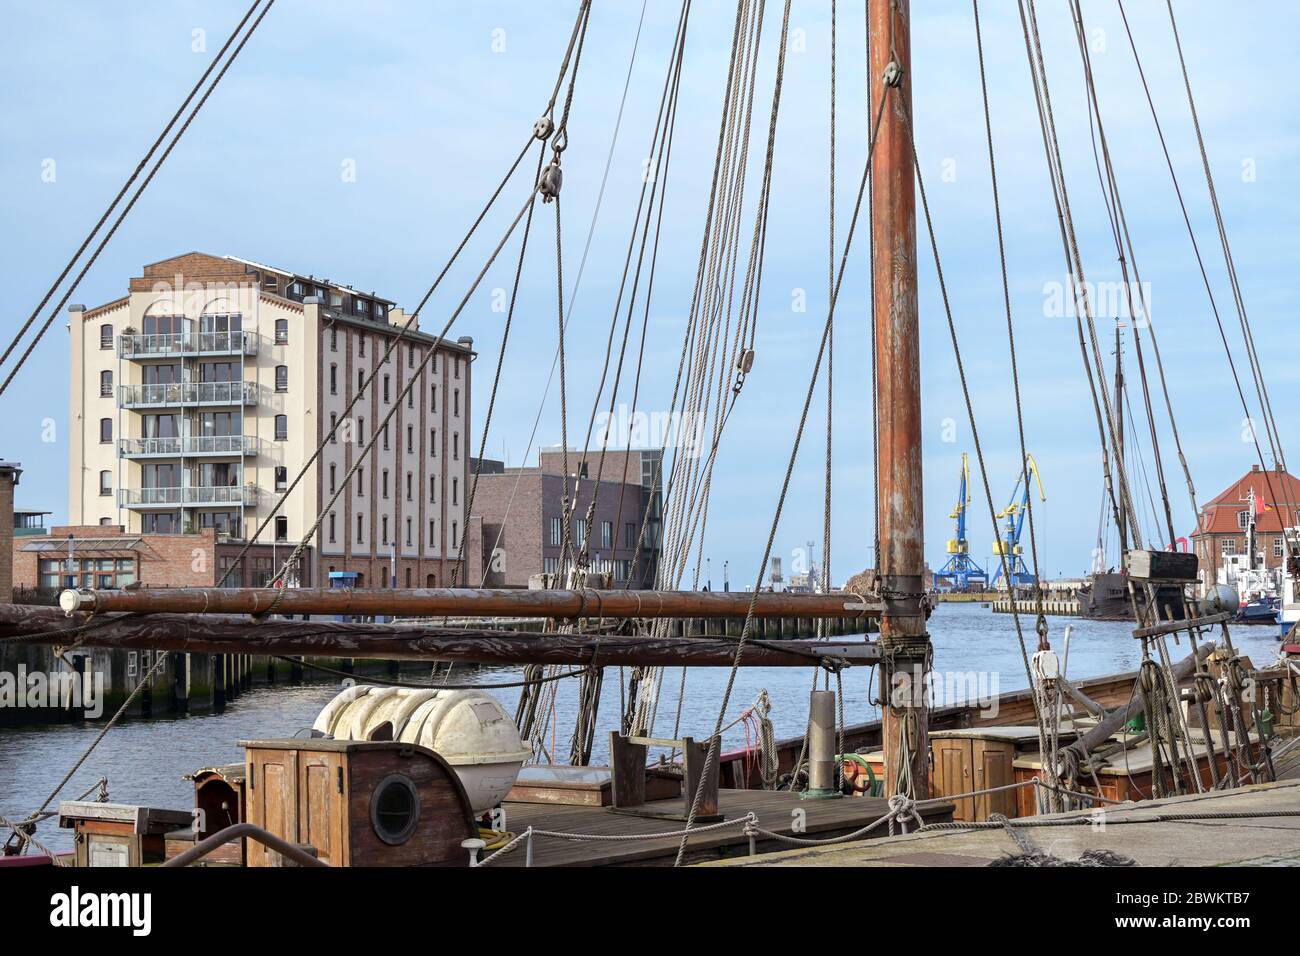 Hafen von Wismar an der Ostsee mit einem historischen Segelschiff im Vordergrund, Touristenmagnet in der alten hansestadt, Deutschland, Europa, auswählen Stockfoto